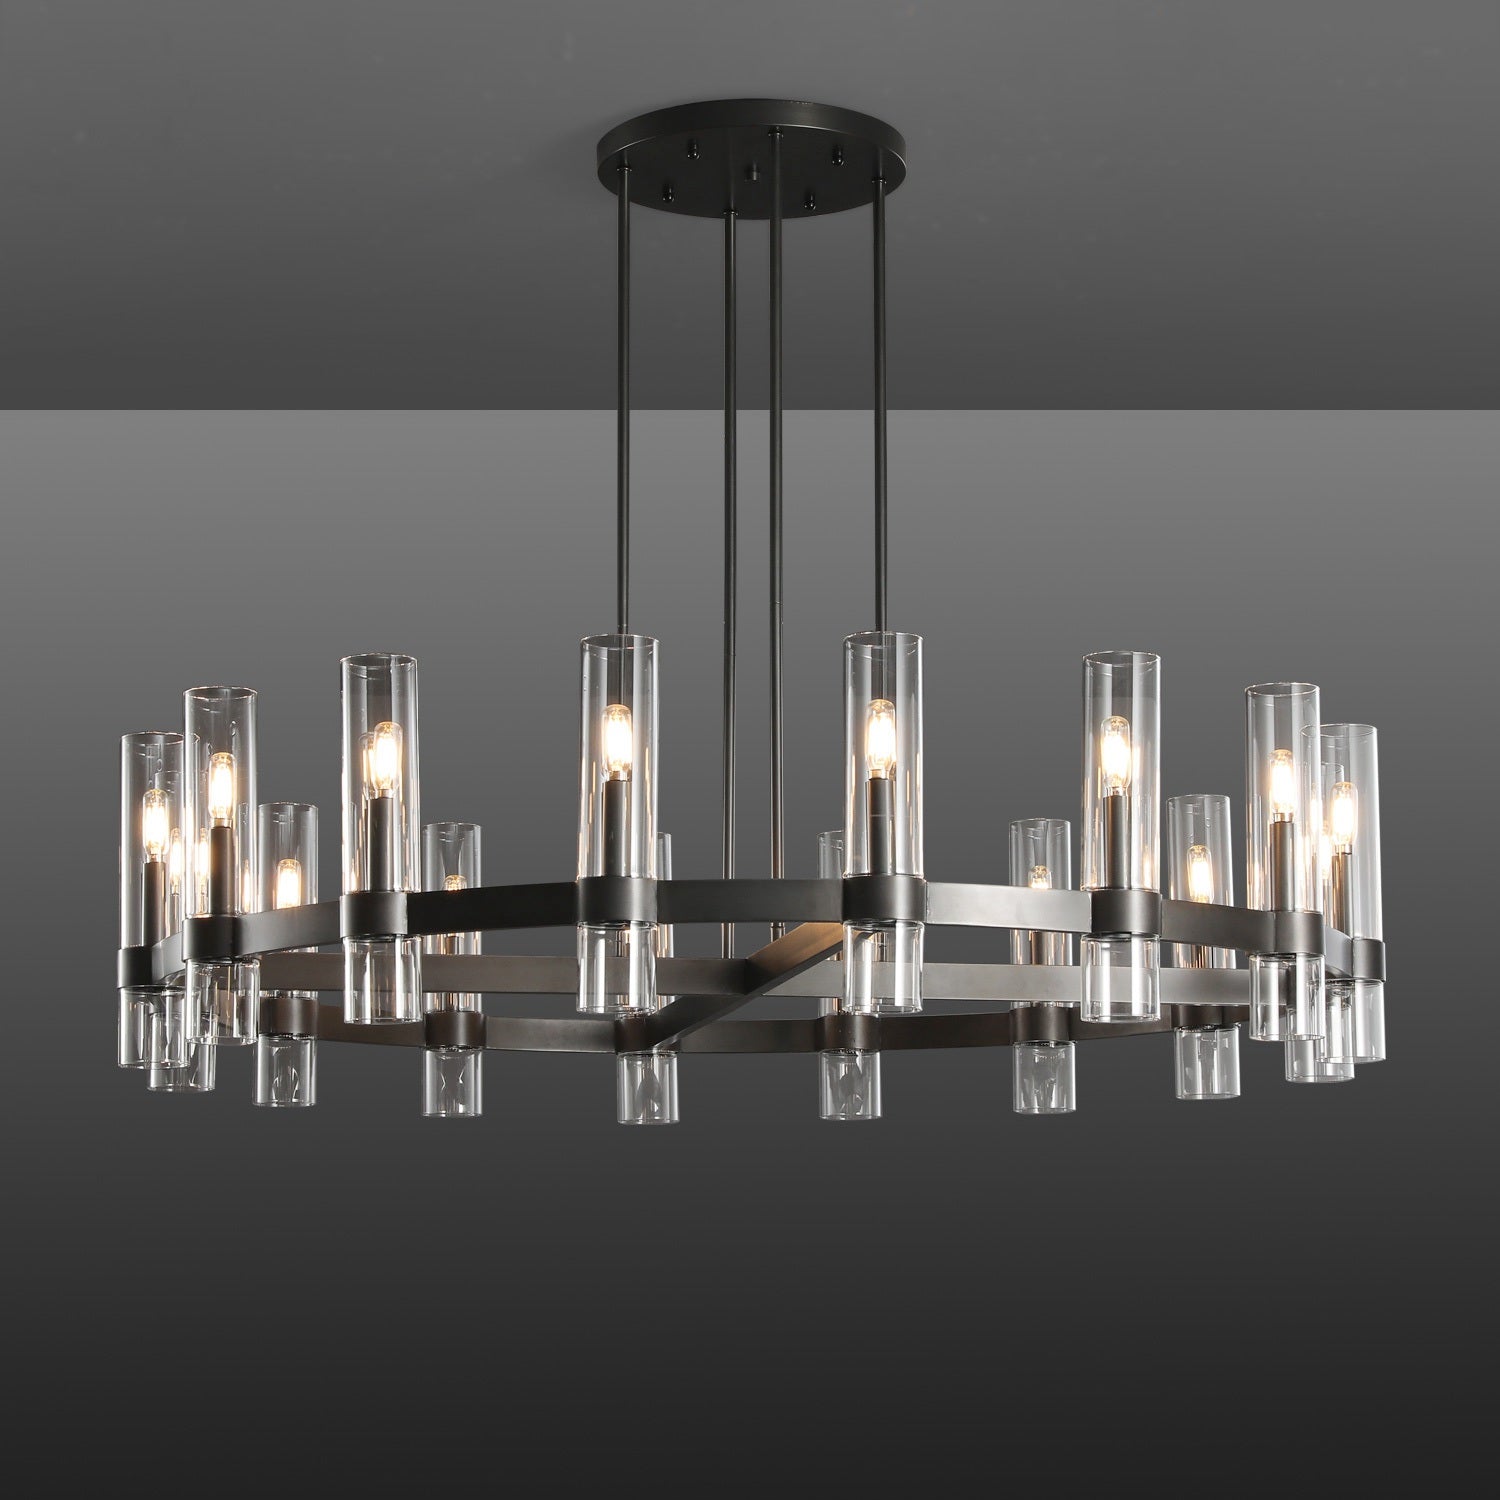 Develle Modern Round Glass Chandelier 36", 48", 60" chandelier Kevin Studio Inc 48" Matte Black 